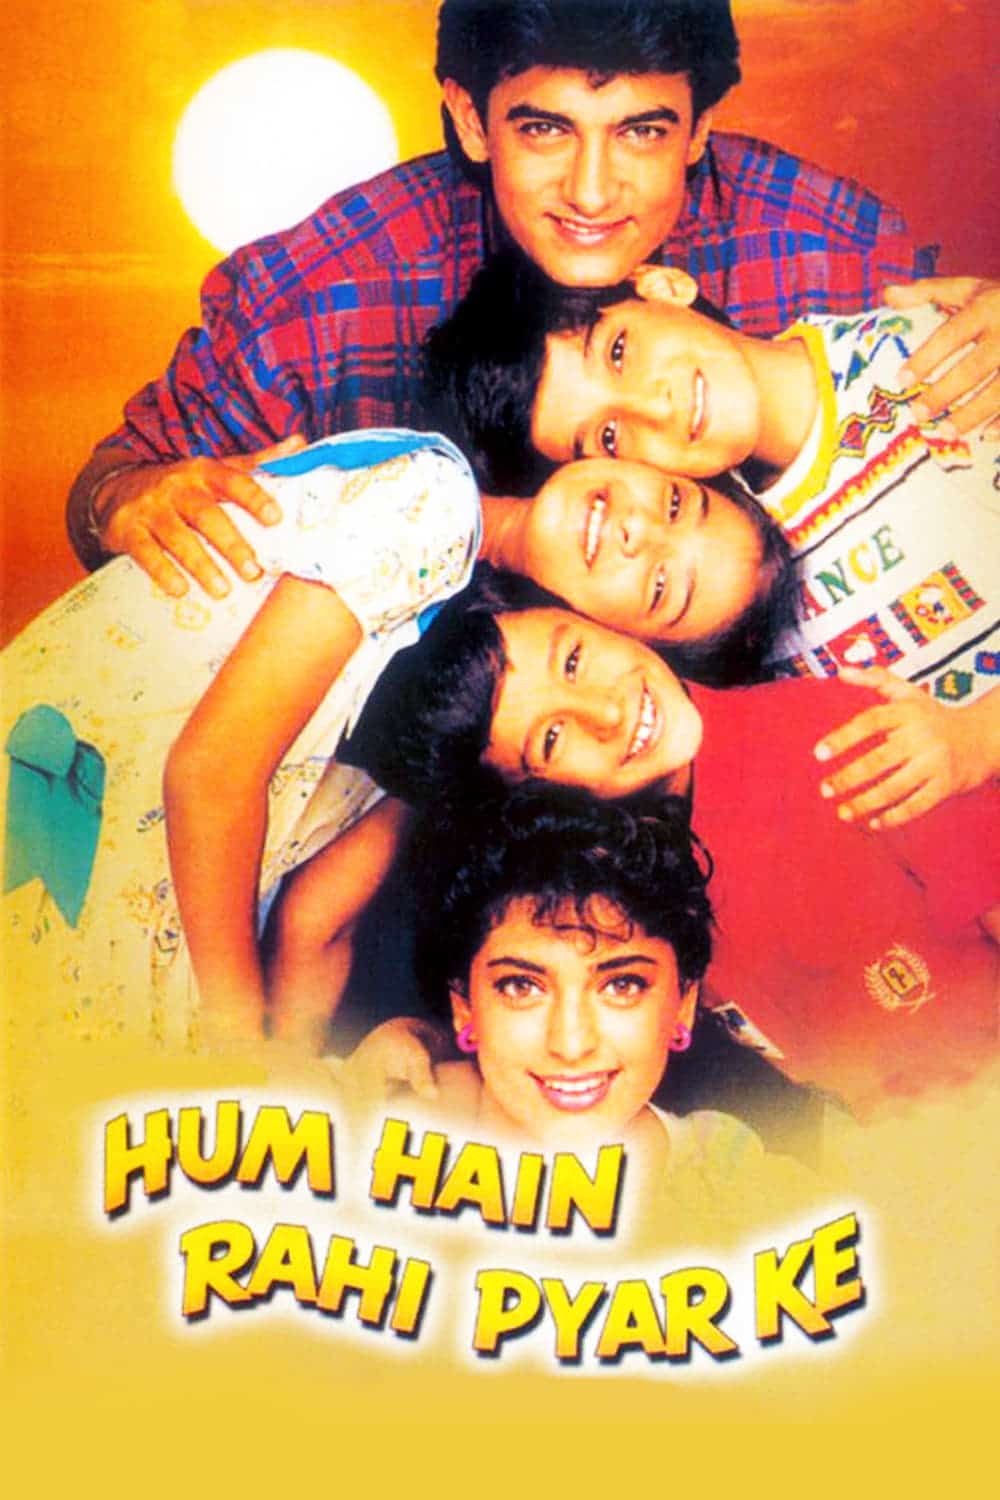 Poster for the movie "Hum Hain Rahi Pyar Ke"